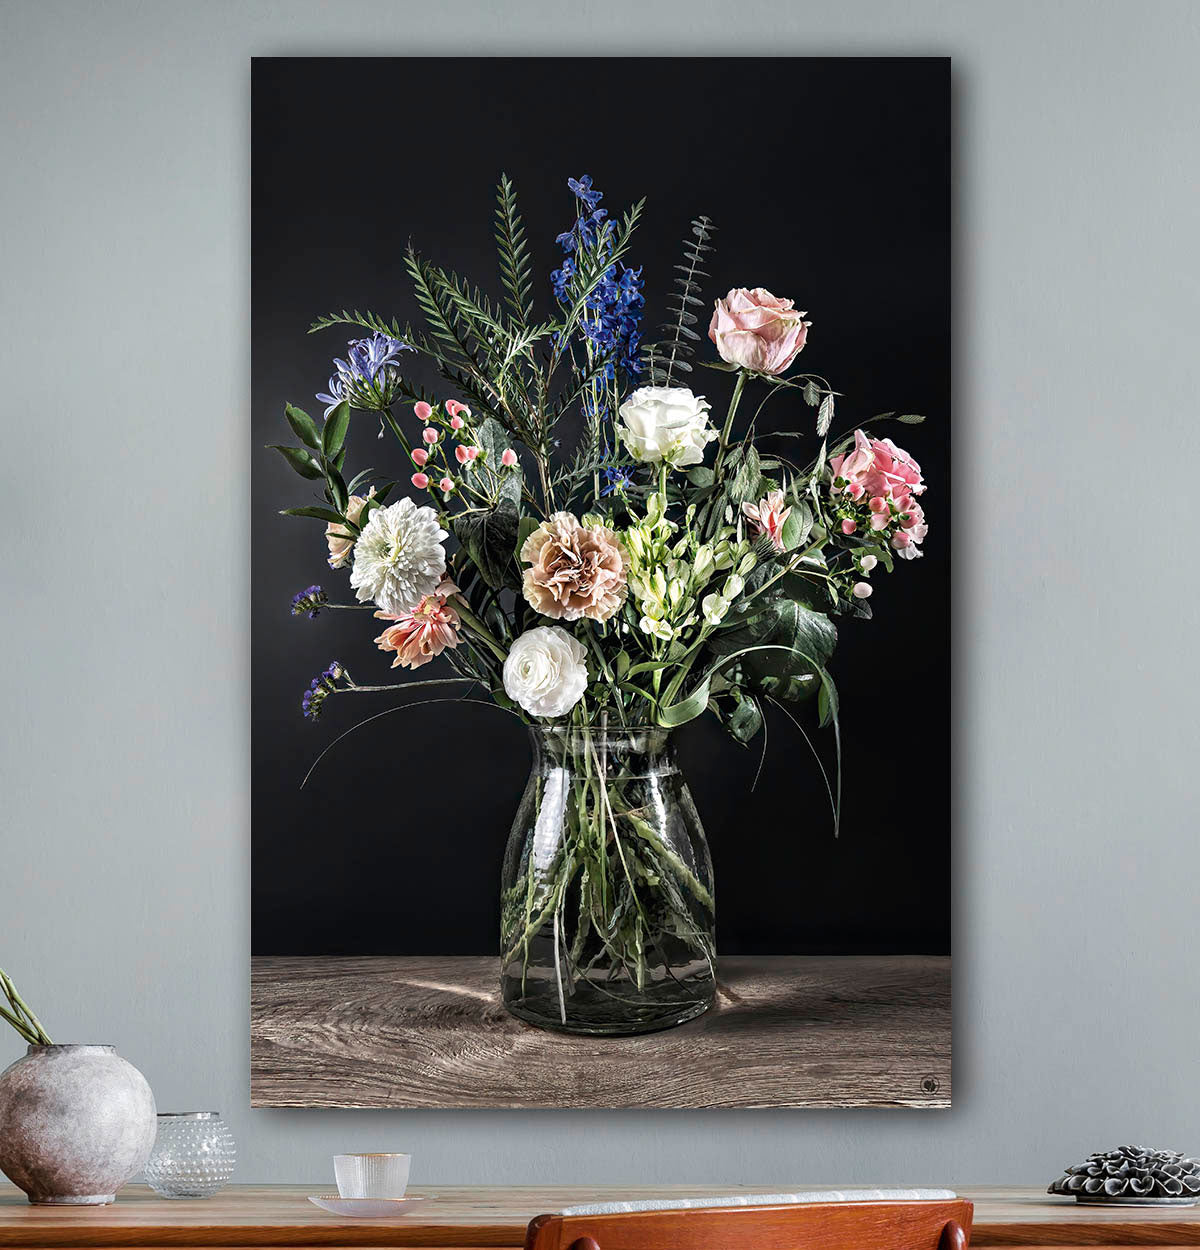 Schilderij met bloemen met zwarte achtergrond tegen een licht grijze muur